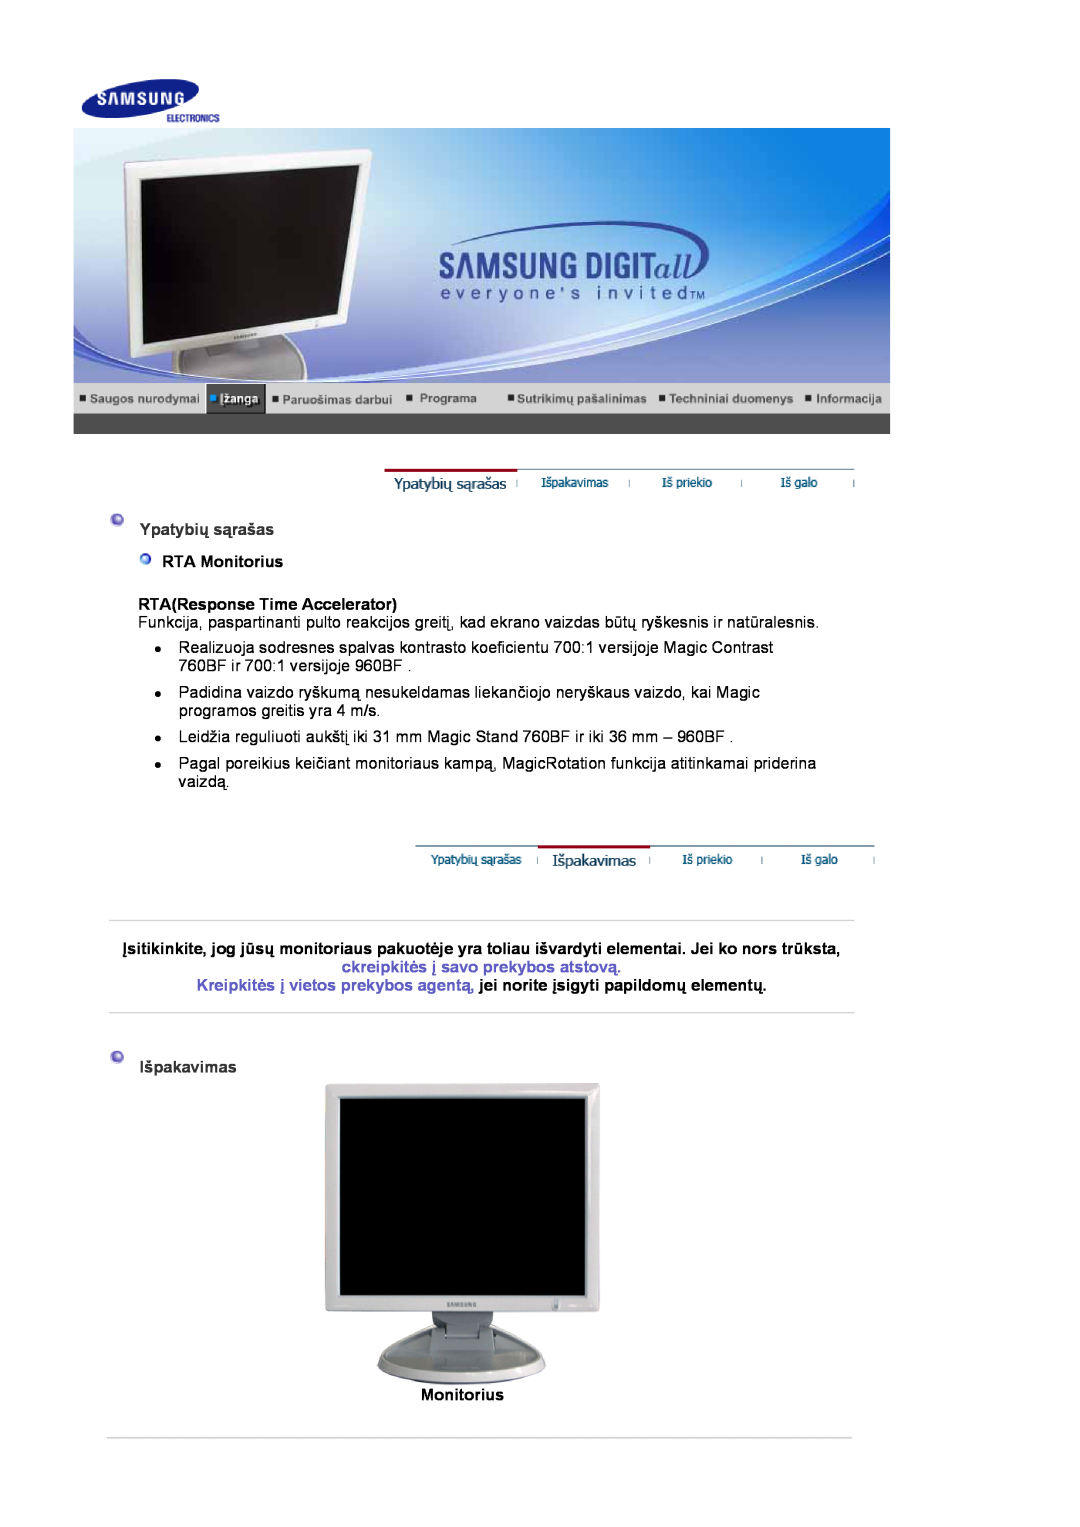 Samsung LS19HJDQHV/EDC, LS19HJDQFV/EDC manual Ypatybių sąrašas, Išpakavimas, RTA Monitorius RTAResponse Time Accelerator 